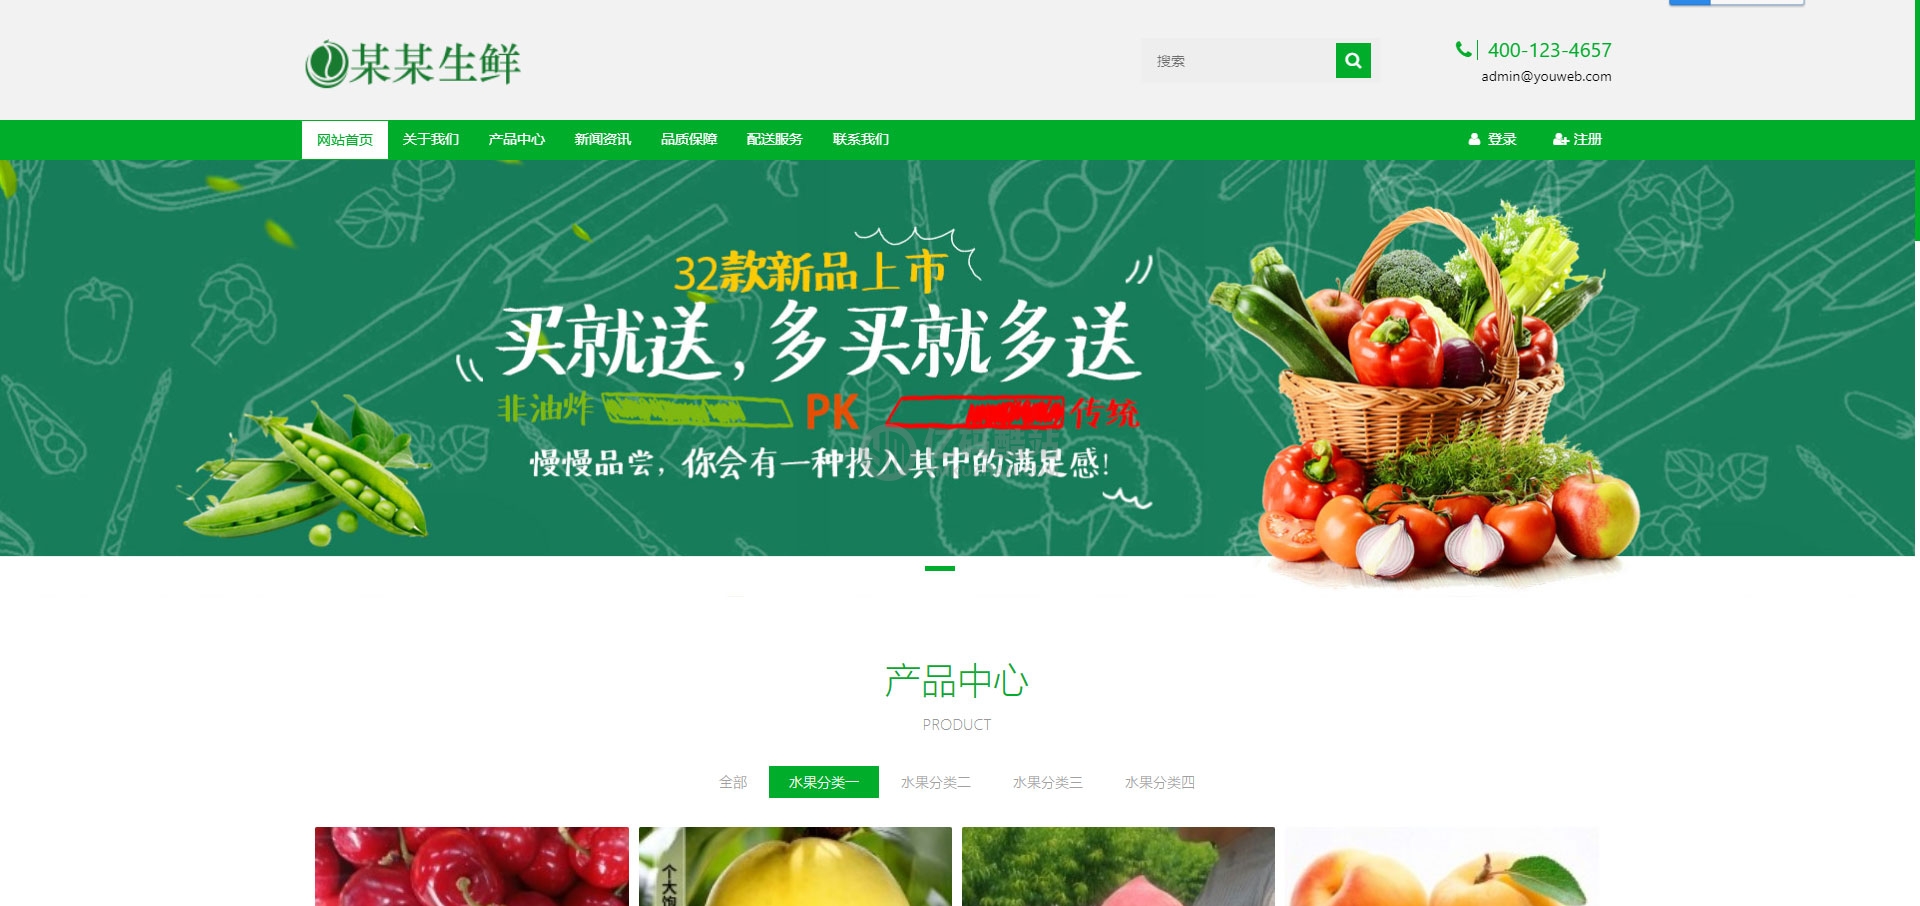 易优cms绿色响应式水果生鲜农产品企业网站模板源码 自适应手机端插图